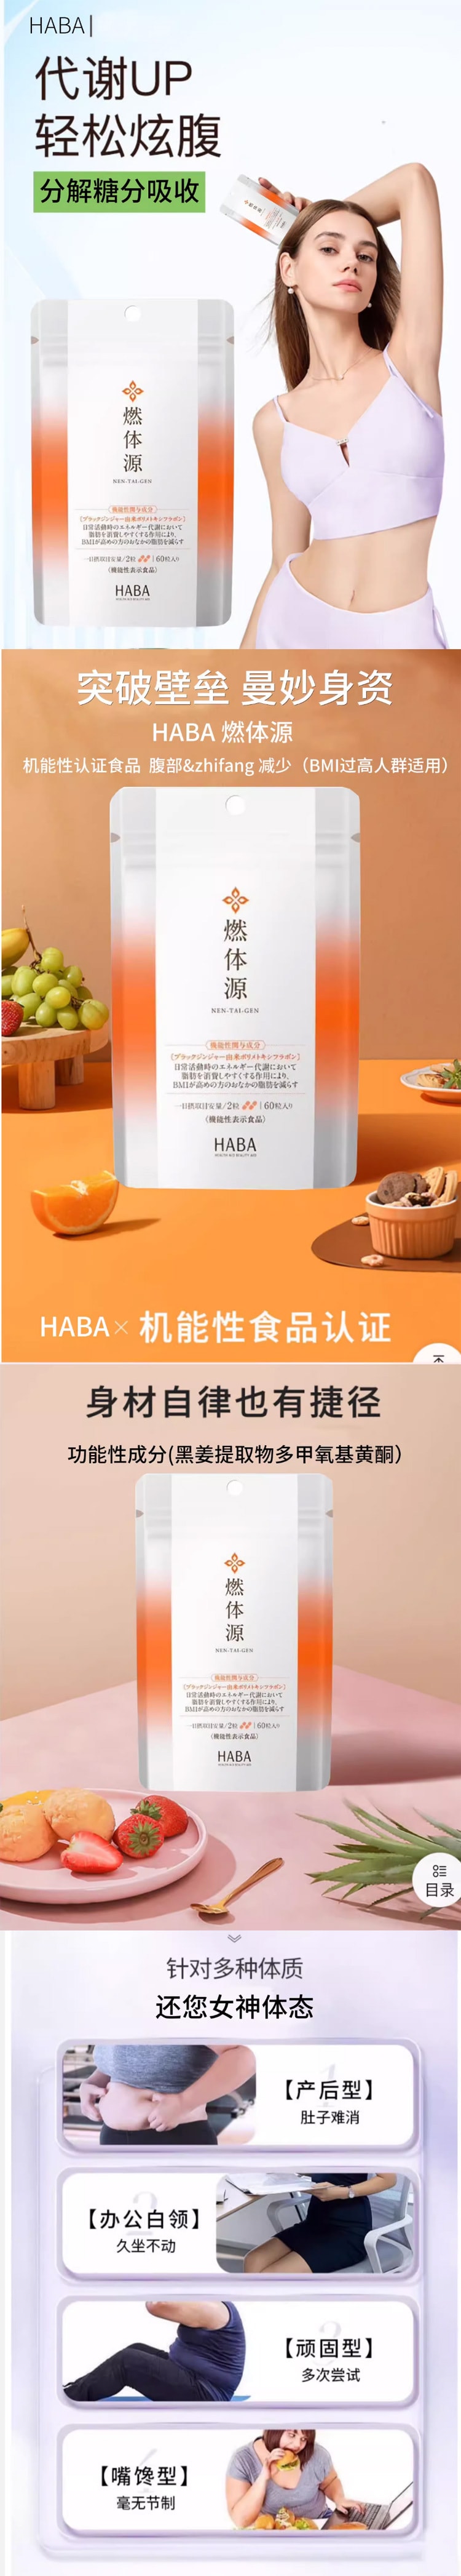 【日本直邮】HABA 燃体源 抑制糖分 排除油脂 减肥瘦身健康减脂控制体重 60粒